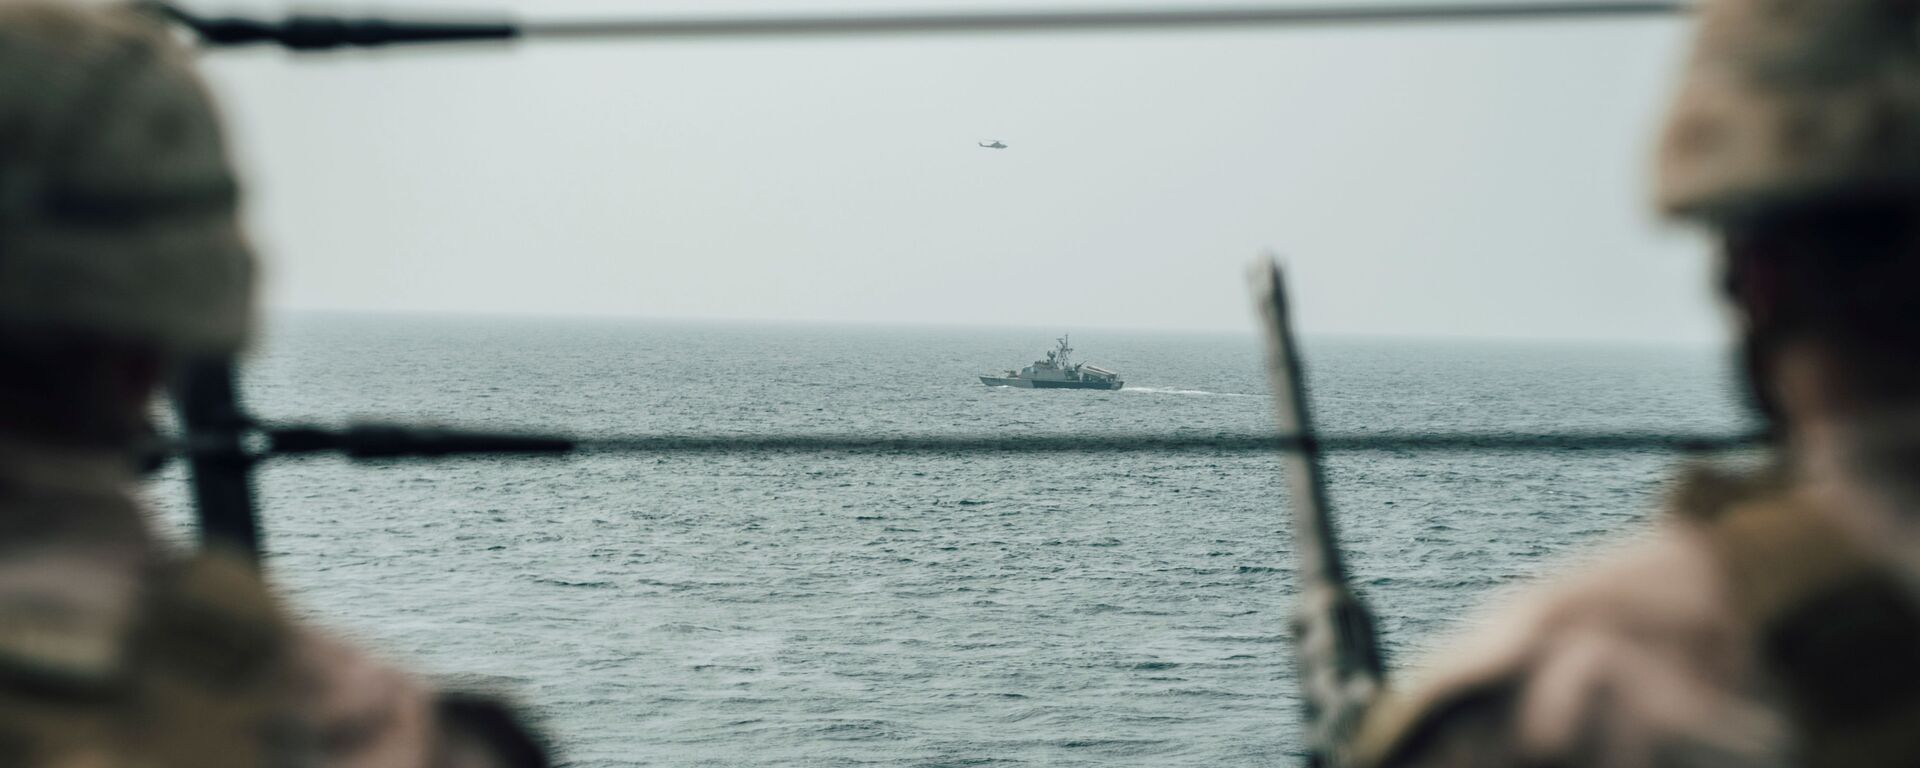 جندي من مشاة البحرية الأمريكية يراقب طائرة إيرانية هجومية من سفينة حربية أمريكية جون مورثا خلال مضيق هرمز في بحر العرب قبالة عُمان، 18 يوليو/ تموز 2019 - سبوتنيك عربي, 1920, 23.12.2021